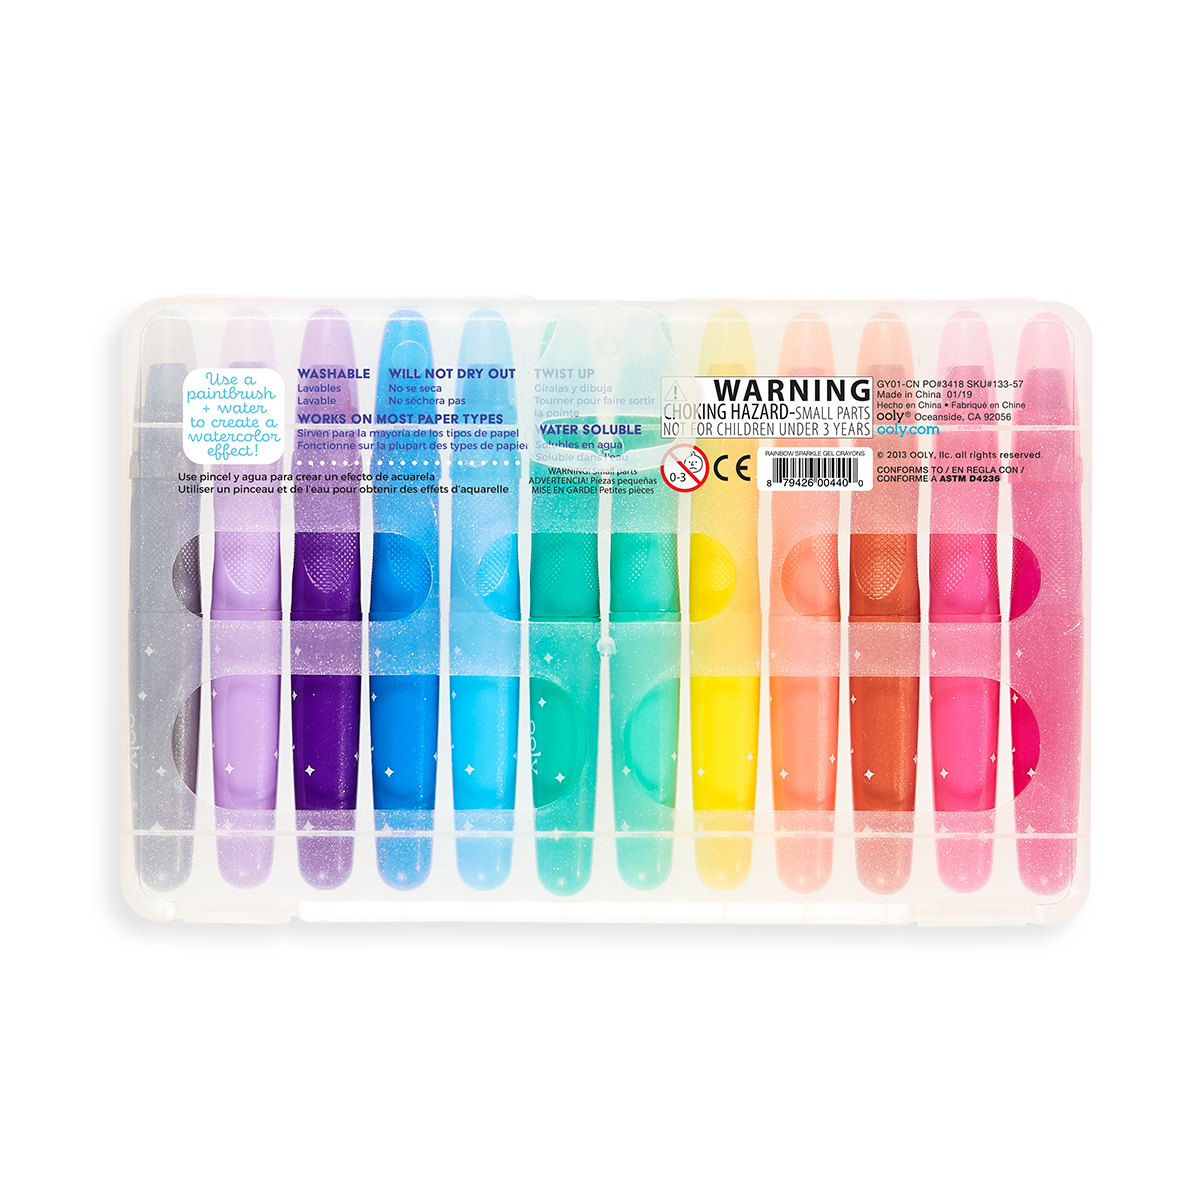 สีเทียนประกายมุก เมทัลลิก Rainbow Sparkle Watercolor Gel Crayons